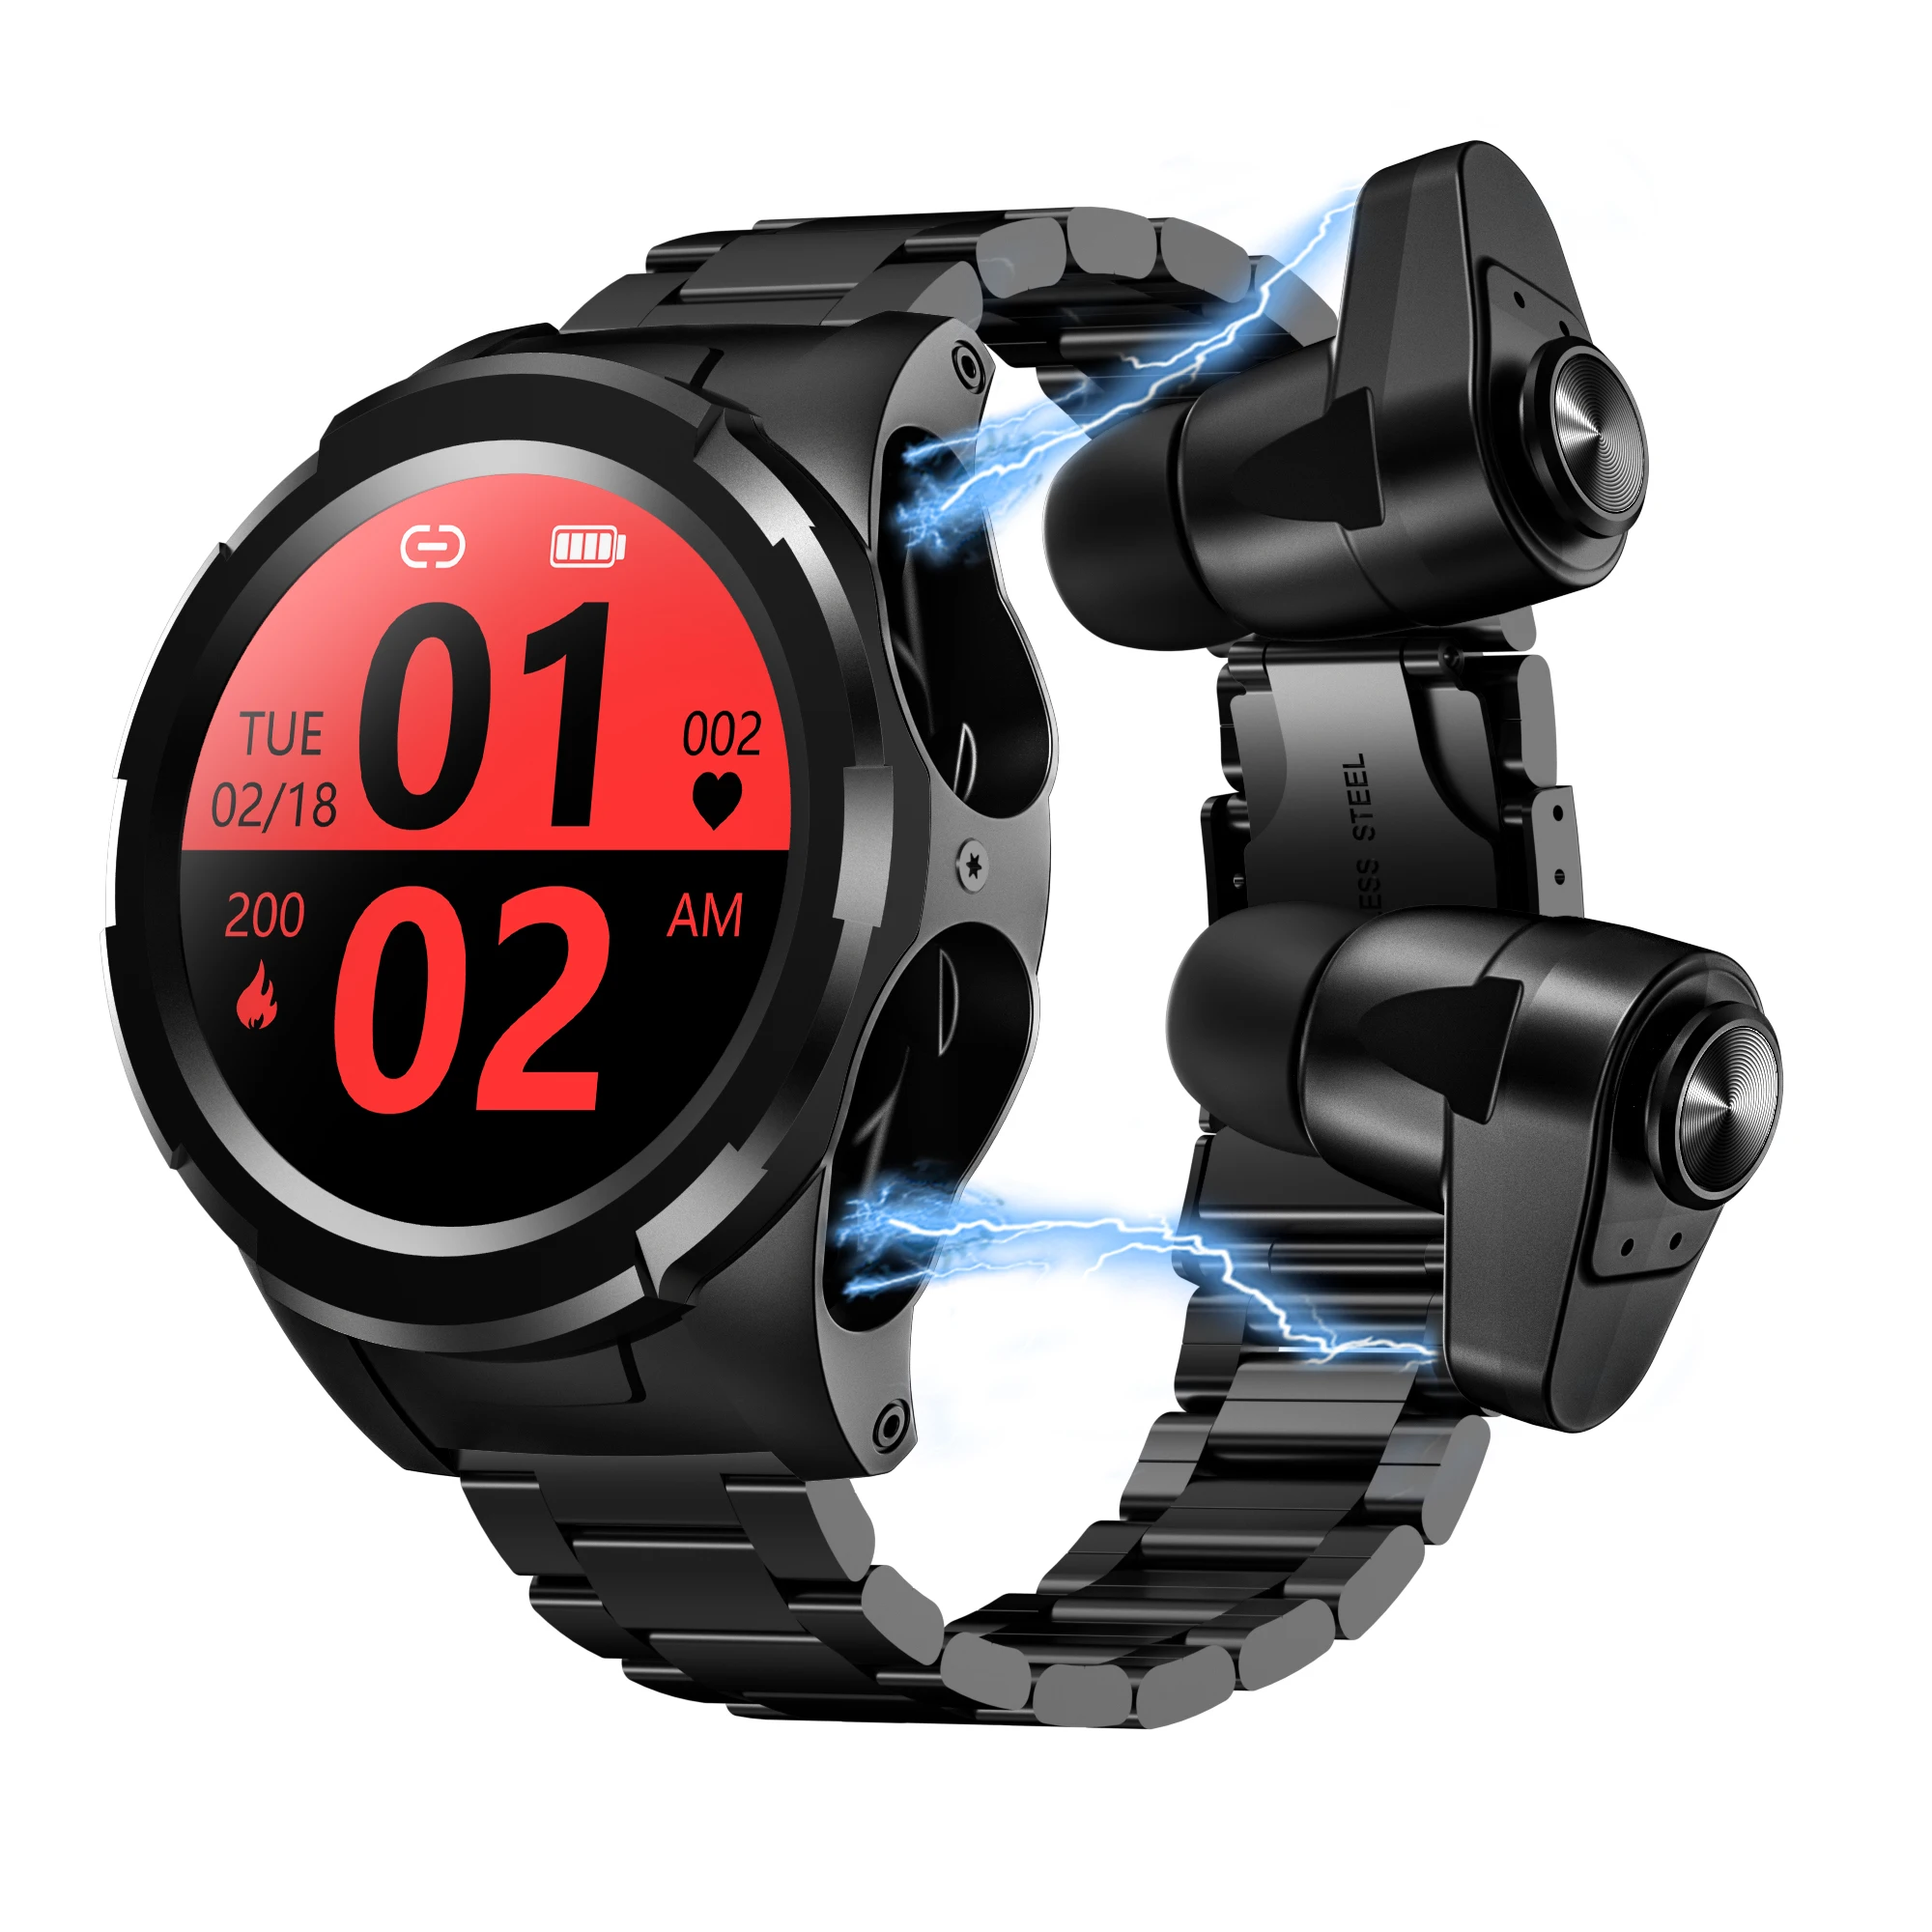 

2021 New 2 In 1 Smartwatch Earphone Wireless Tws wearable devices reloj inteligente S201 Pedometer Smart Watch With Earbuds